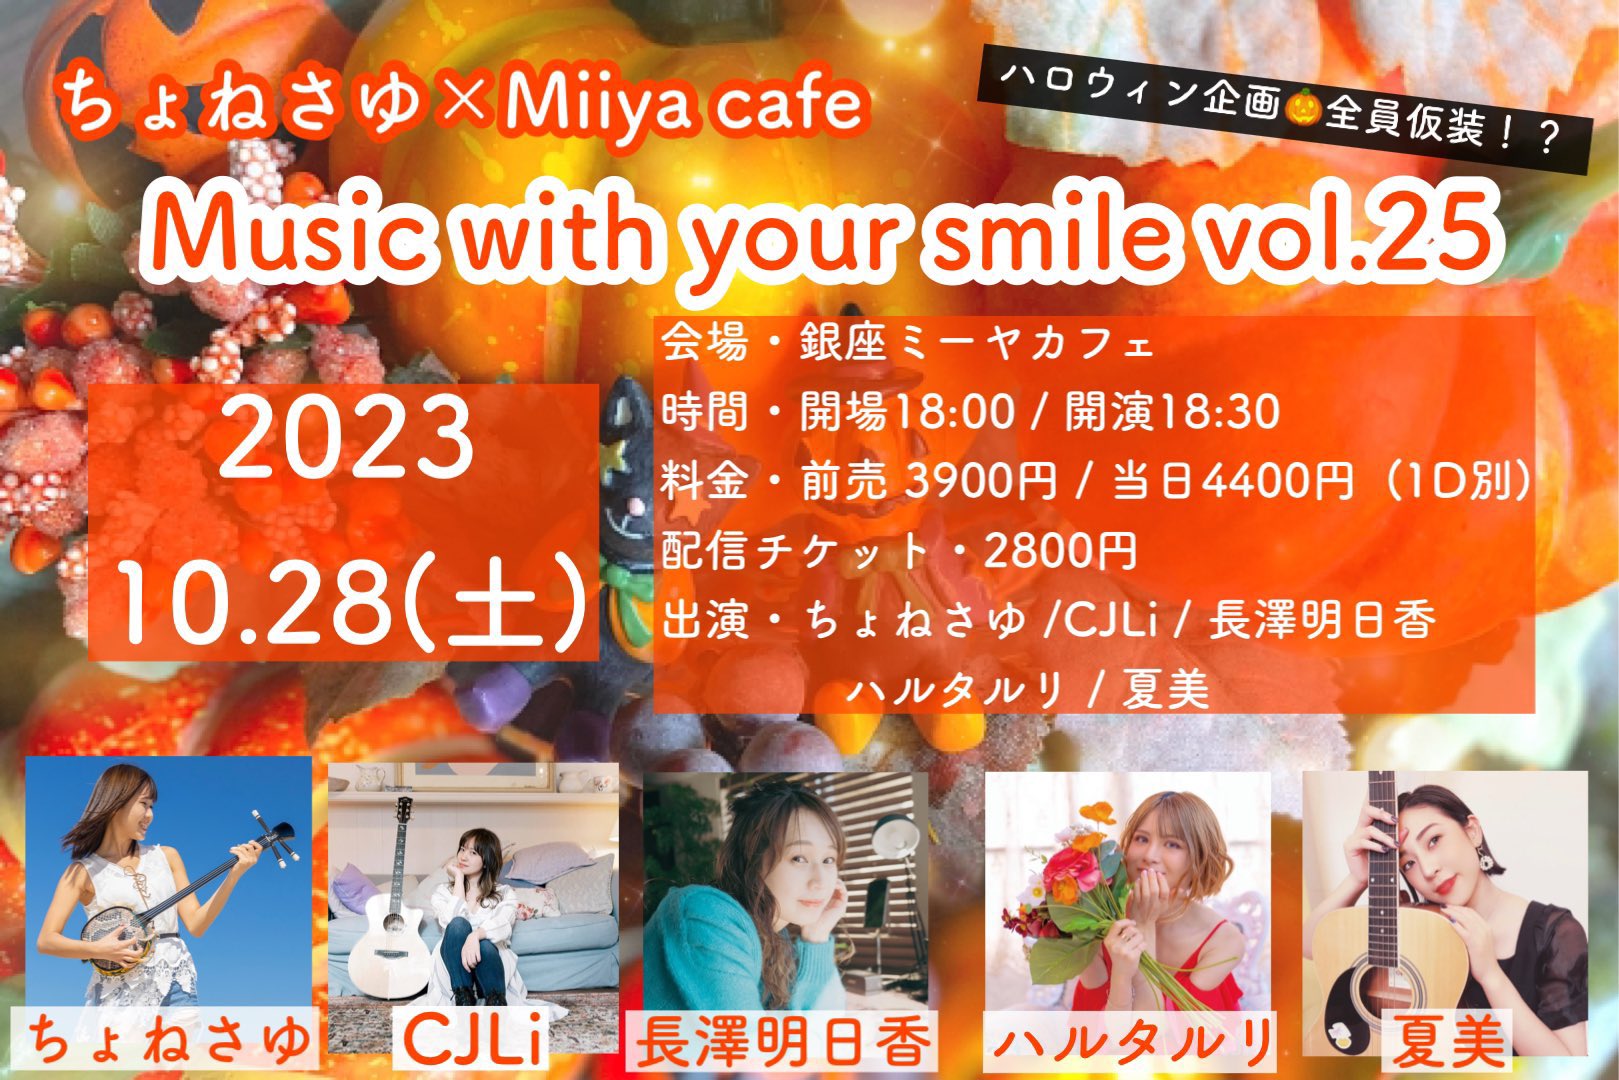 ちょねさゆ × Miiya cafe Music with your smile vol.25